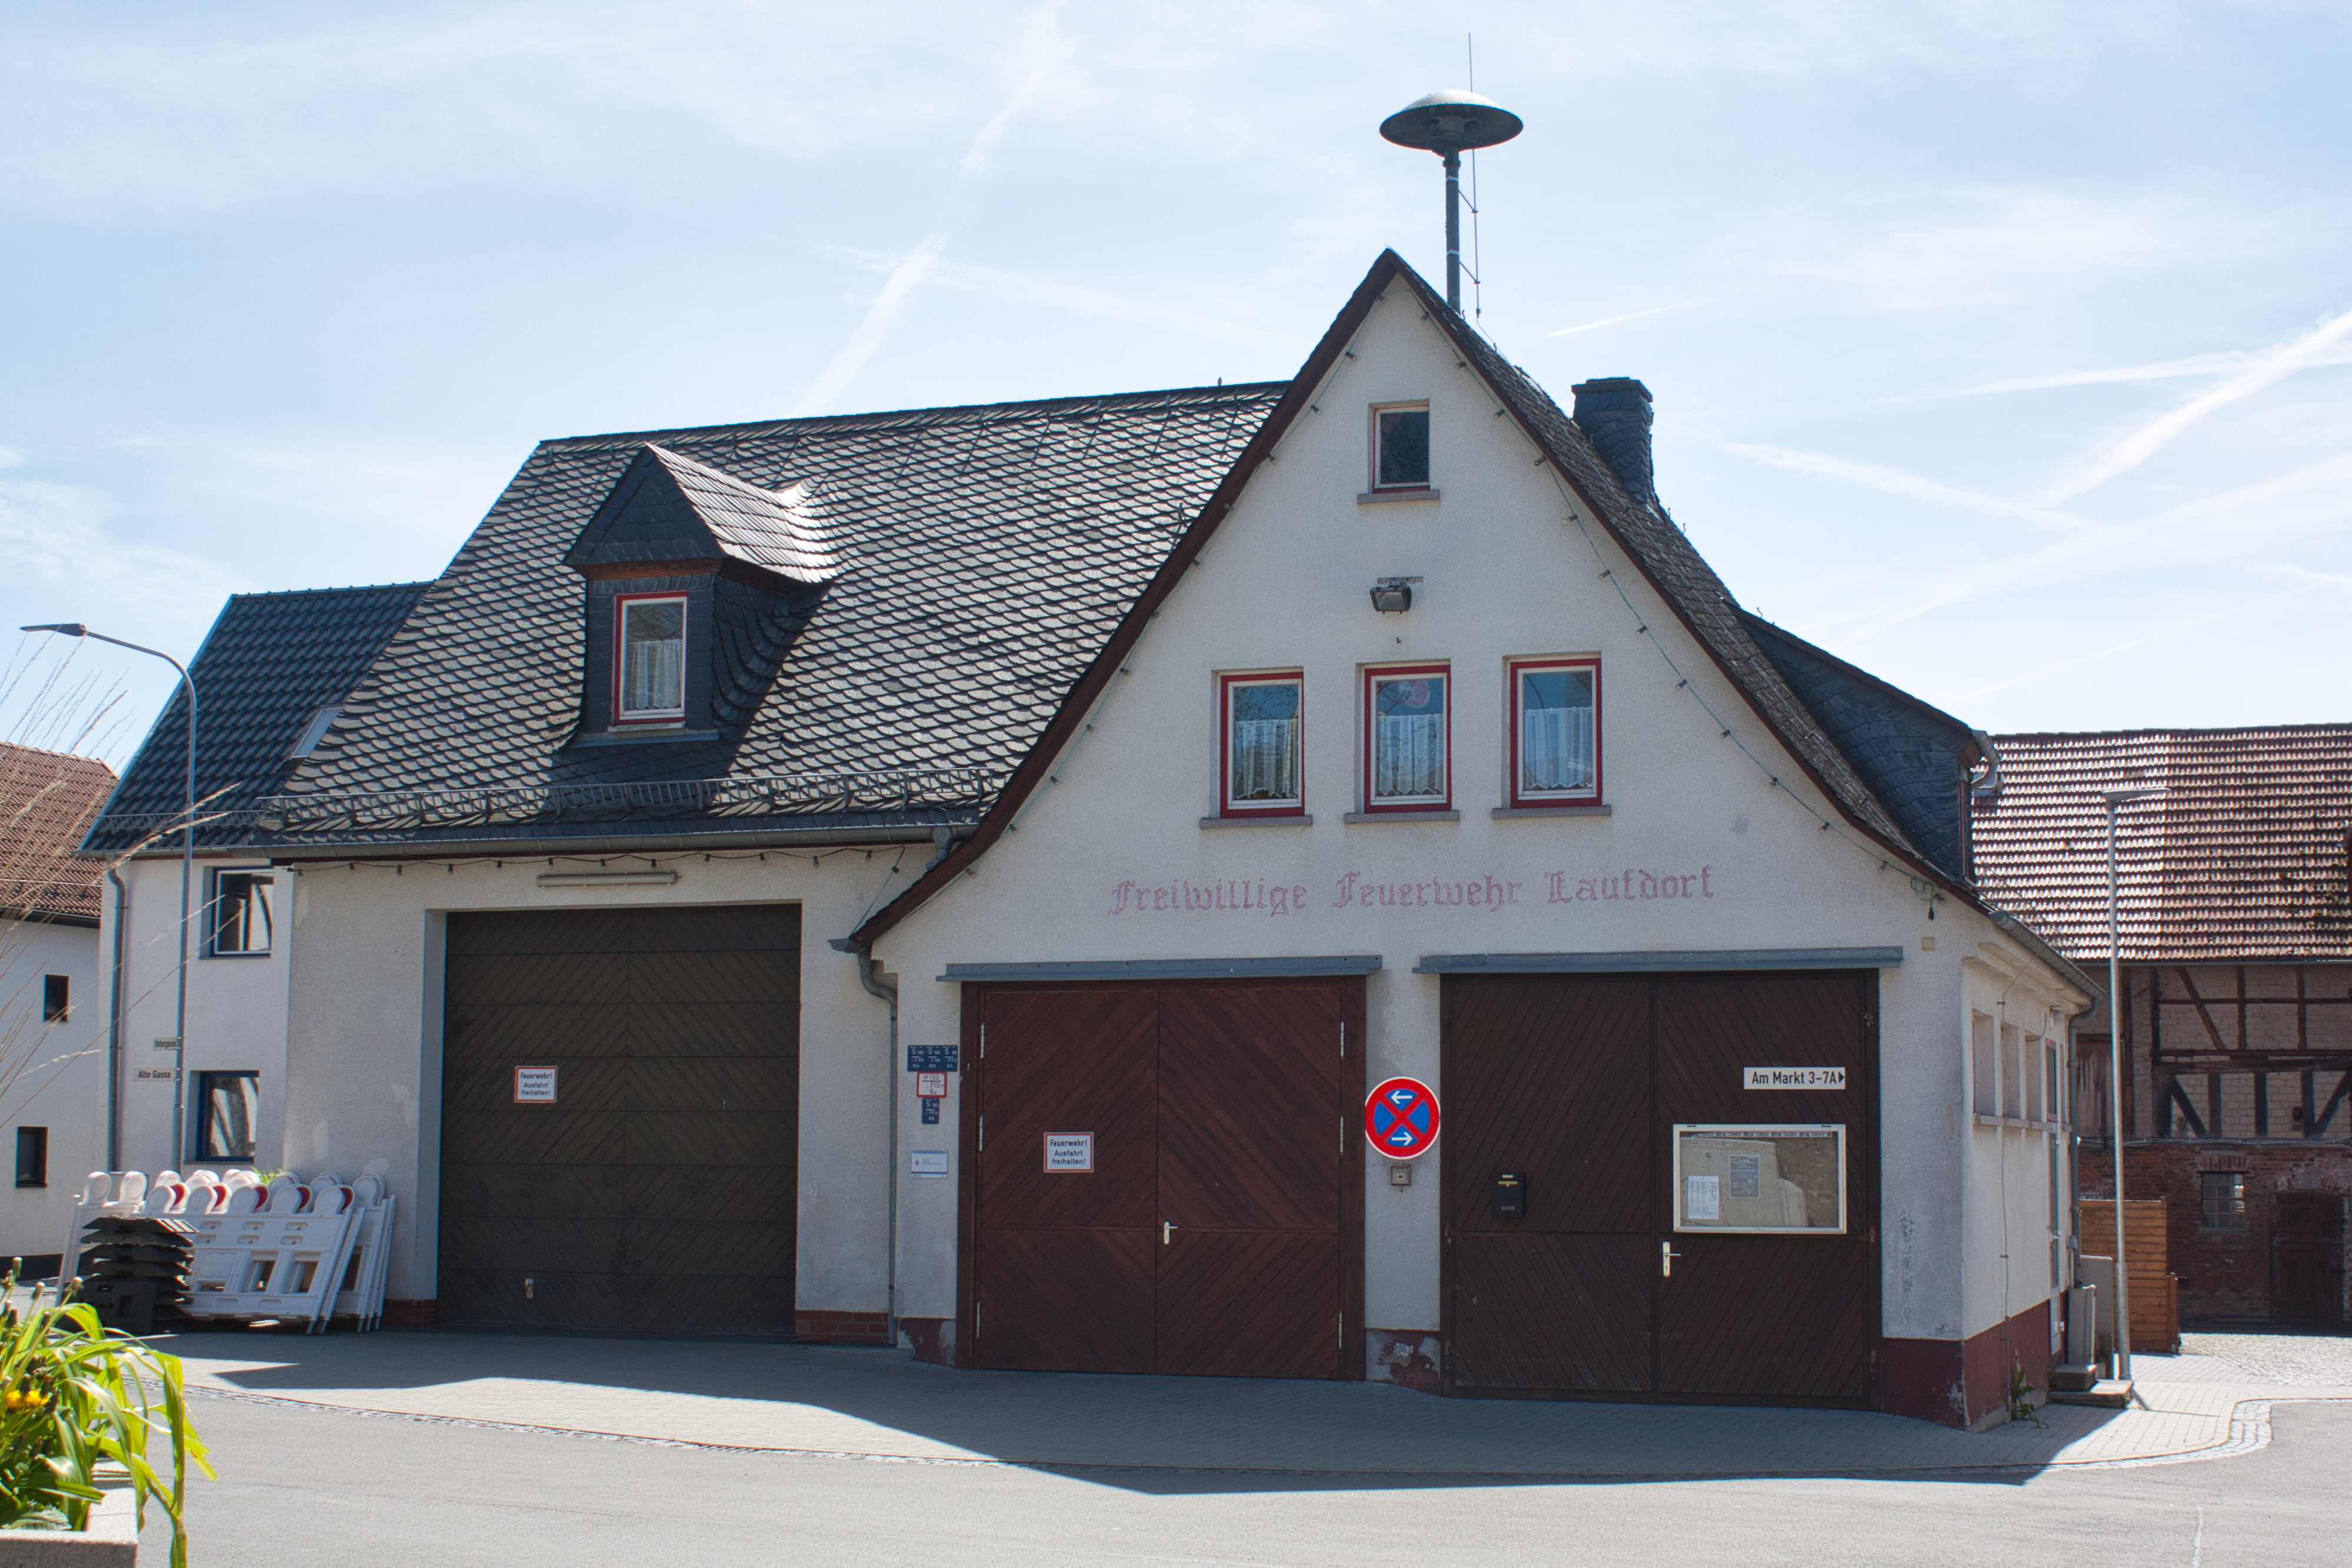 Freiwillige Feuerwehr in Schöffengrund Laufdorf.
